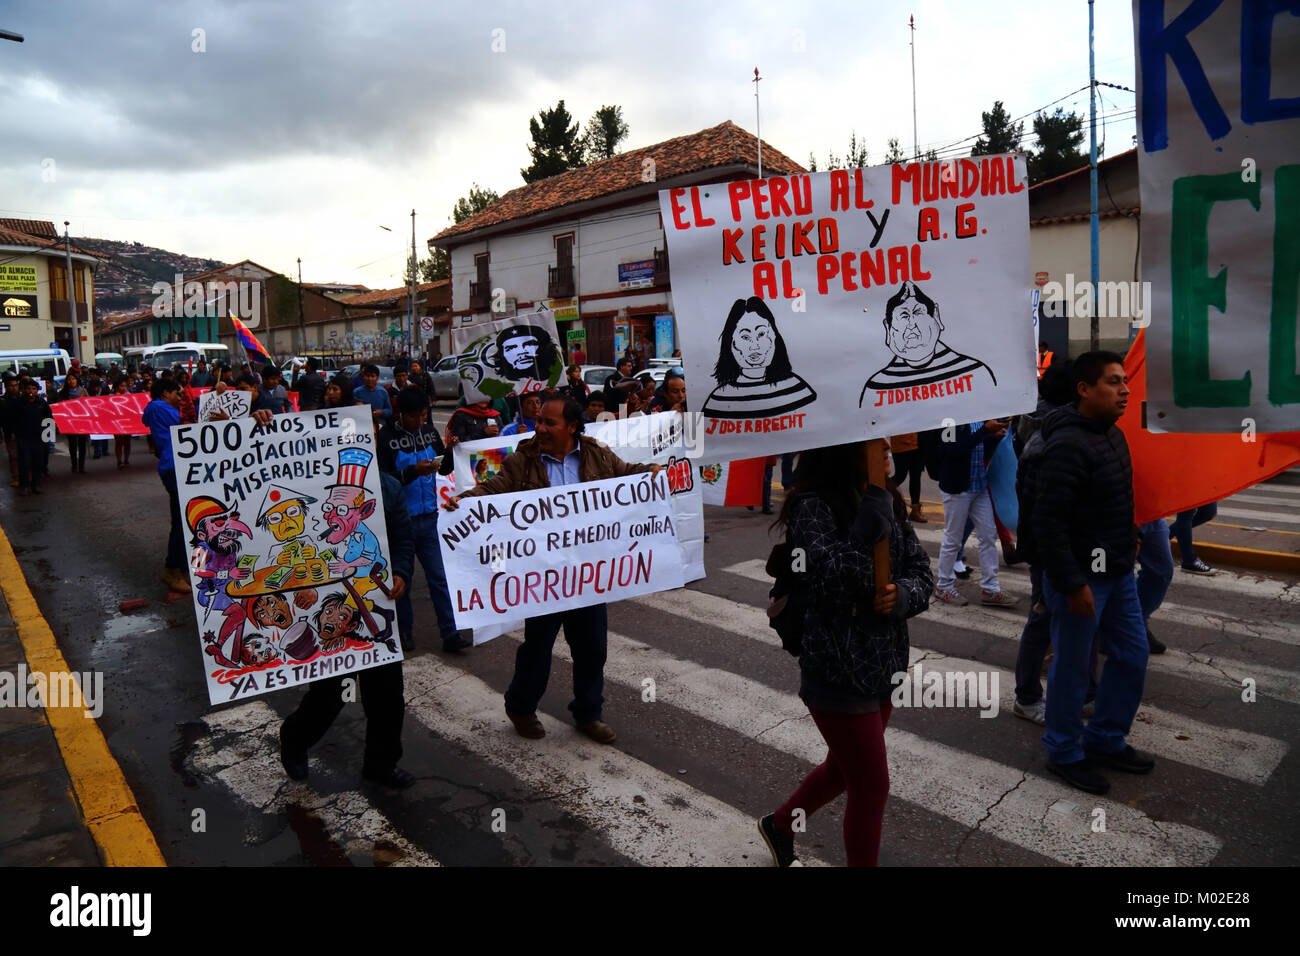 Les manifestants portent des pancartes pour protester contre la corruption politique et l'exploitation à l'étranger au cours d'une marche de protestation, Cusco, Pérou Banque D'Images